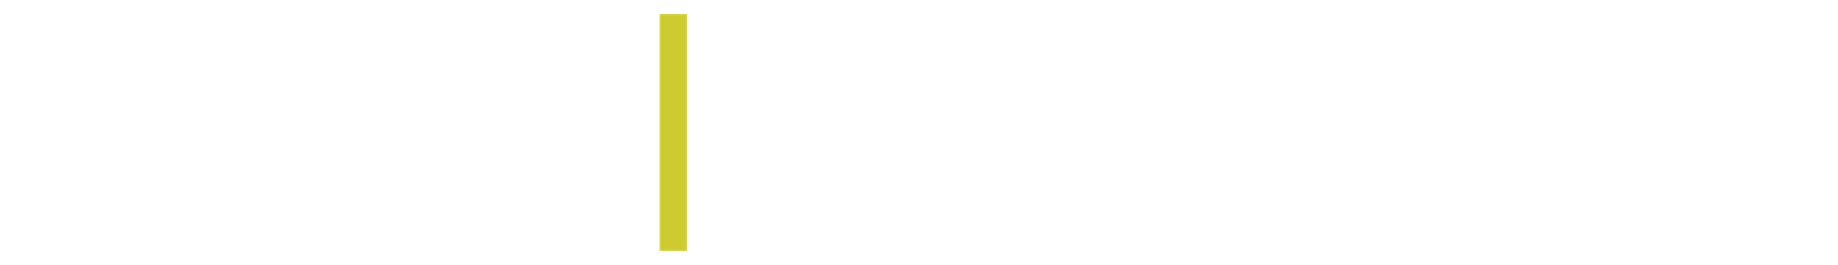 UCFSD Logo